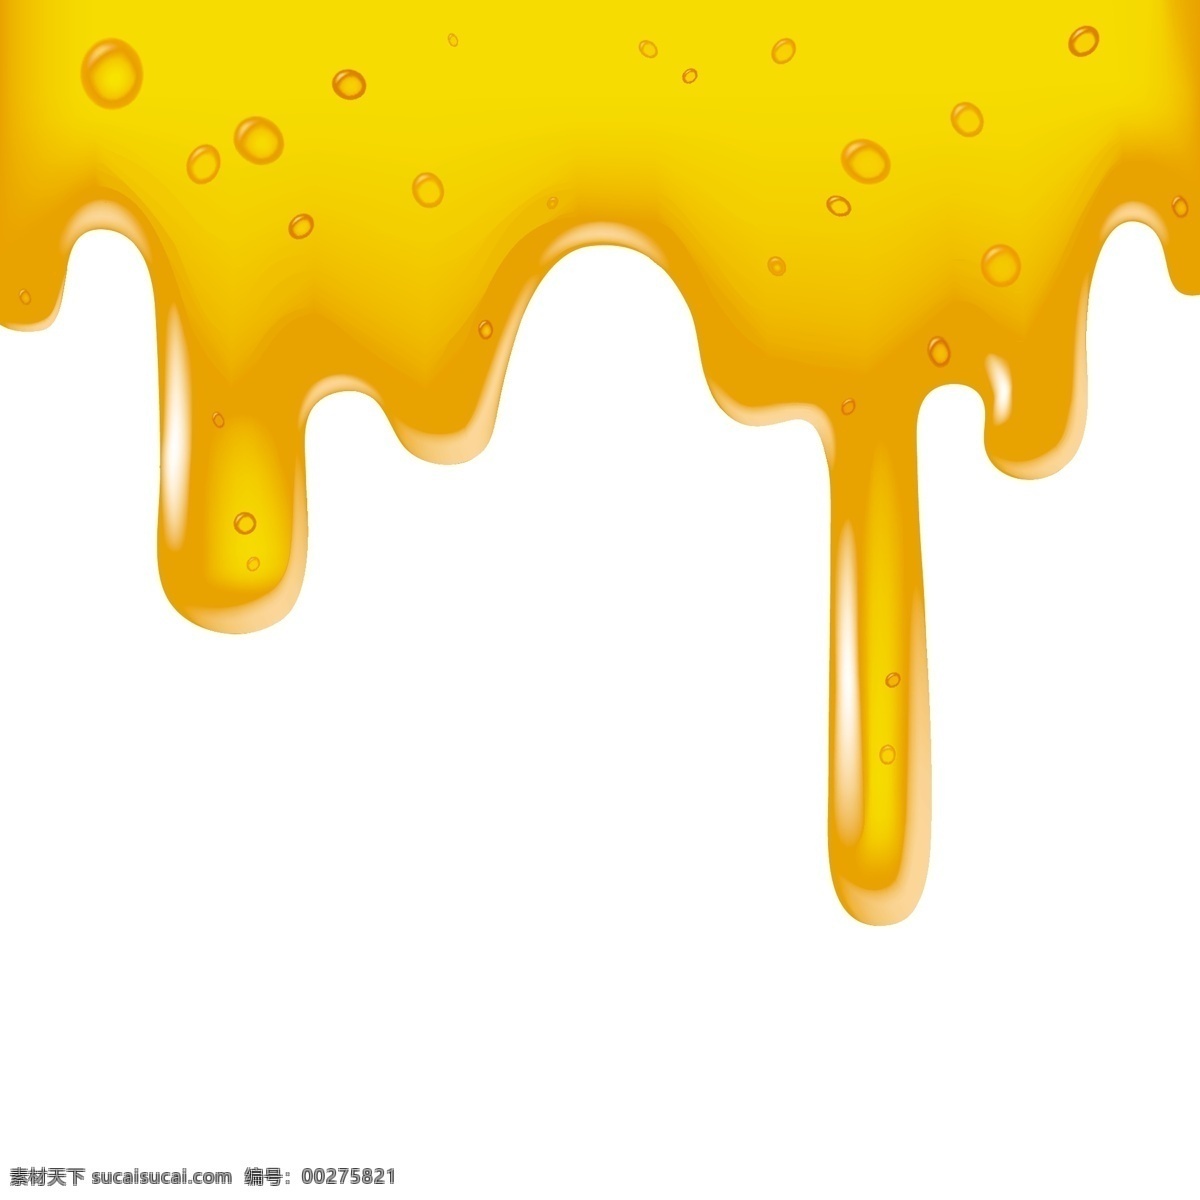 蜂蜜蜜糖素材 蜜糖素材 蜜糖 蜂蜜素材 蜂蜜 honey 共享设计矢量